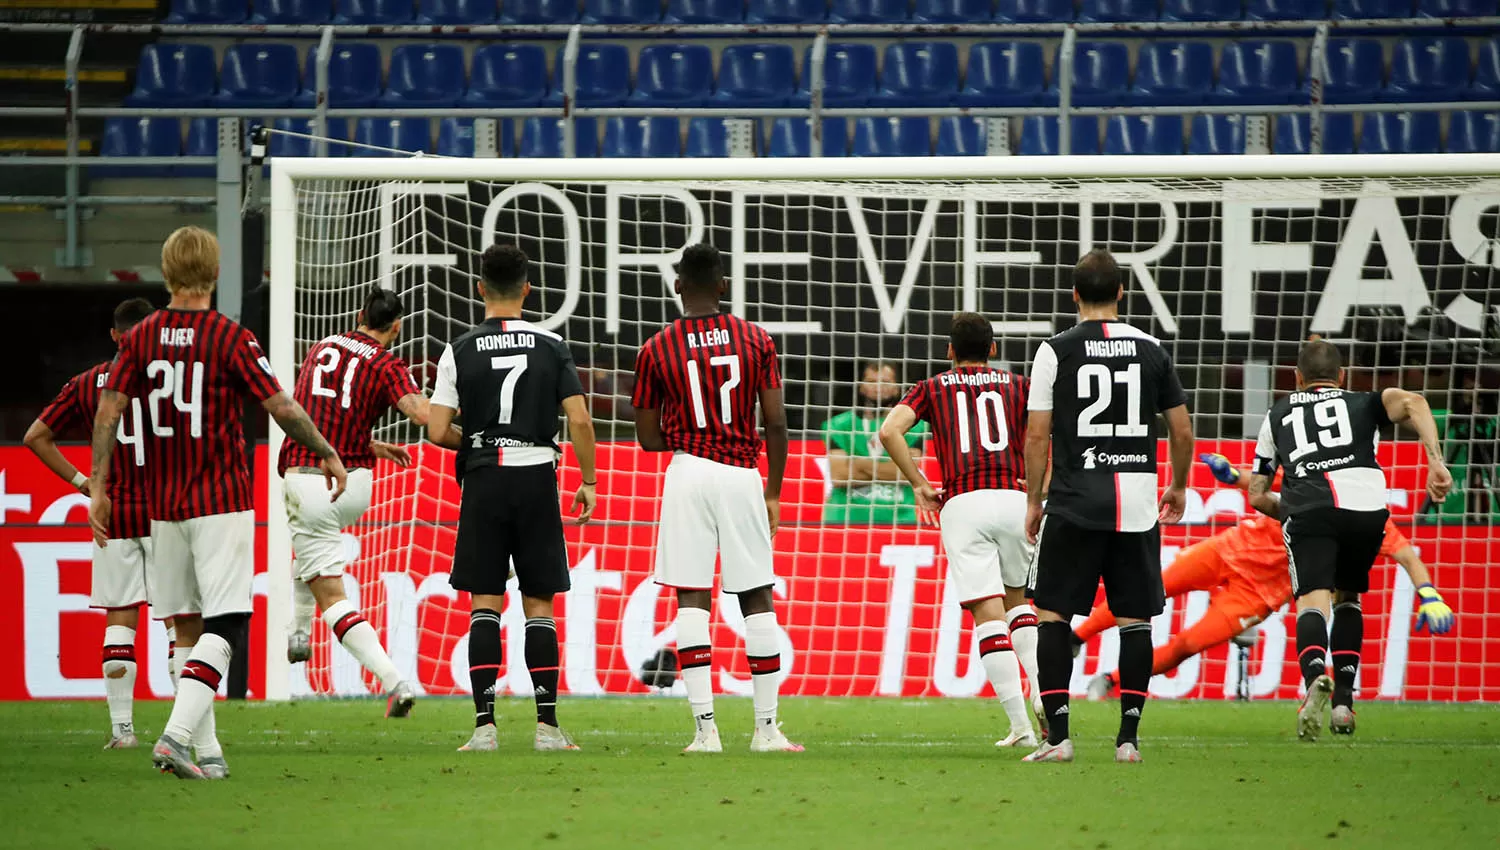 Con este penal convertido por Ibrahimovic, el Milan comenzó su reacción para ganarle a los turineses. (Reuters)